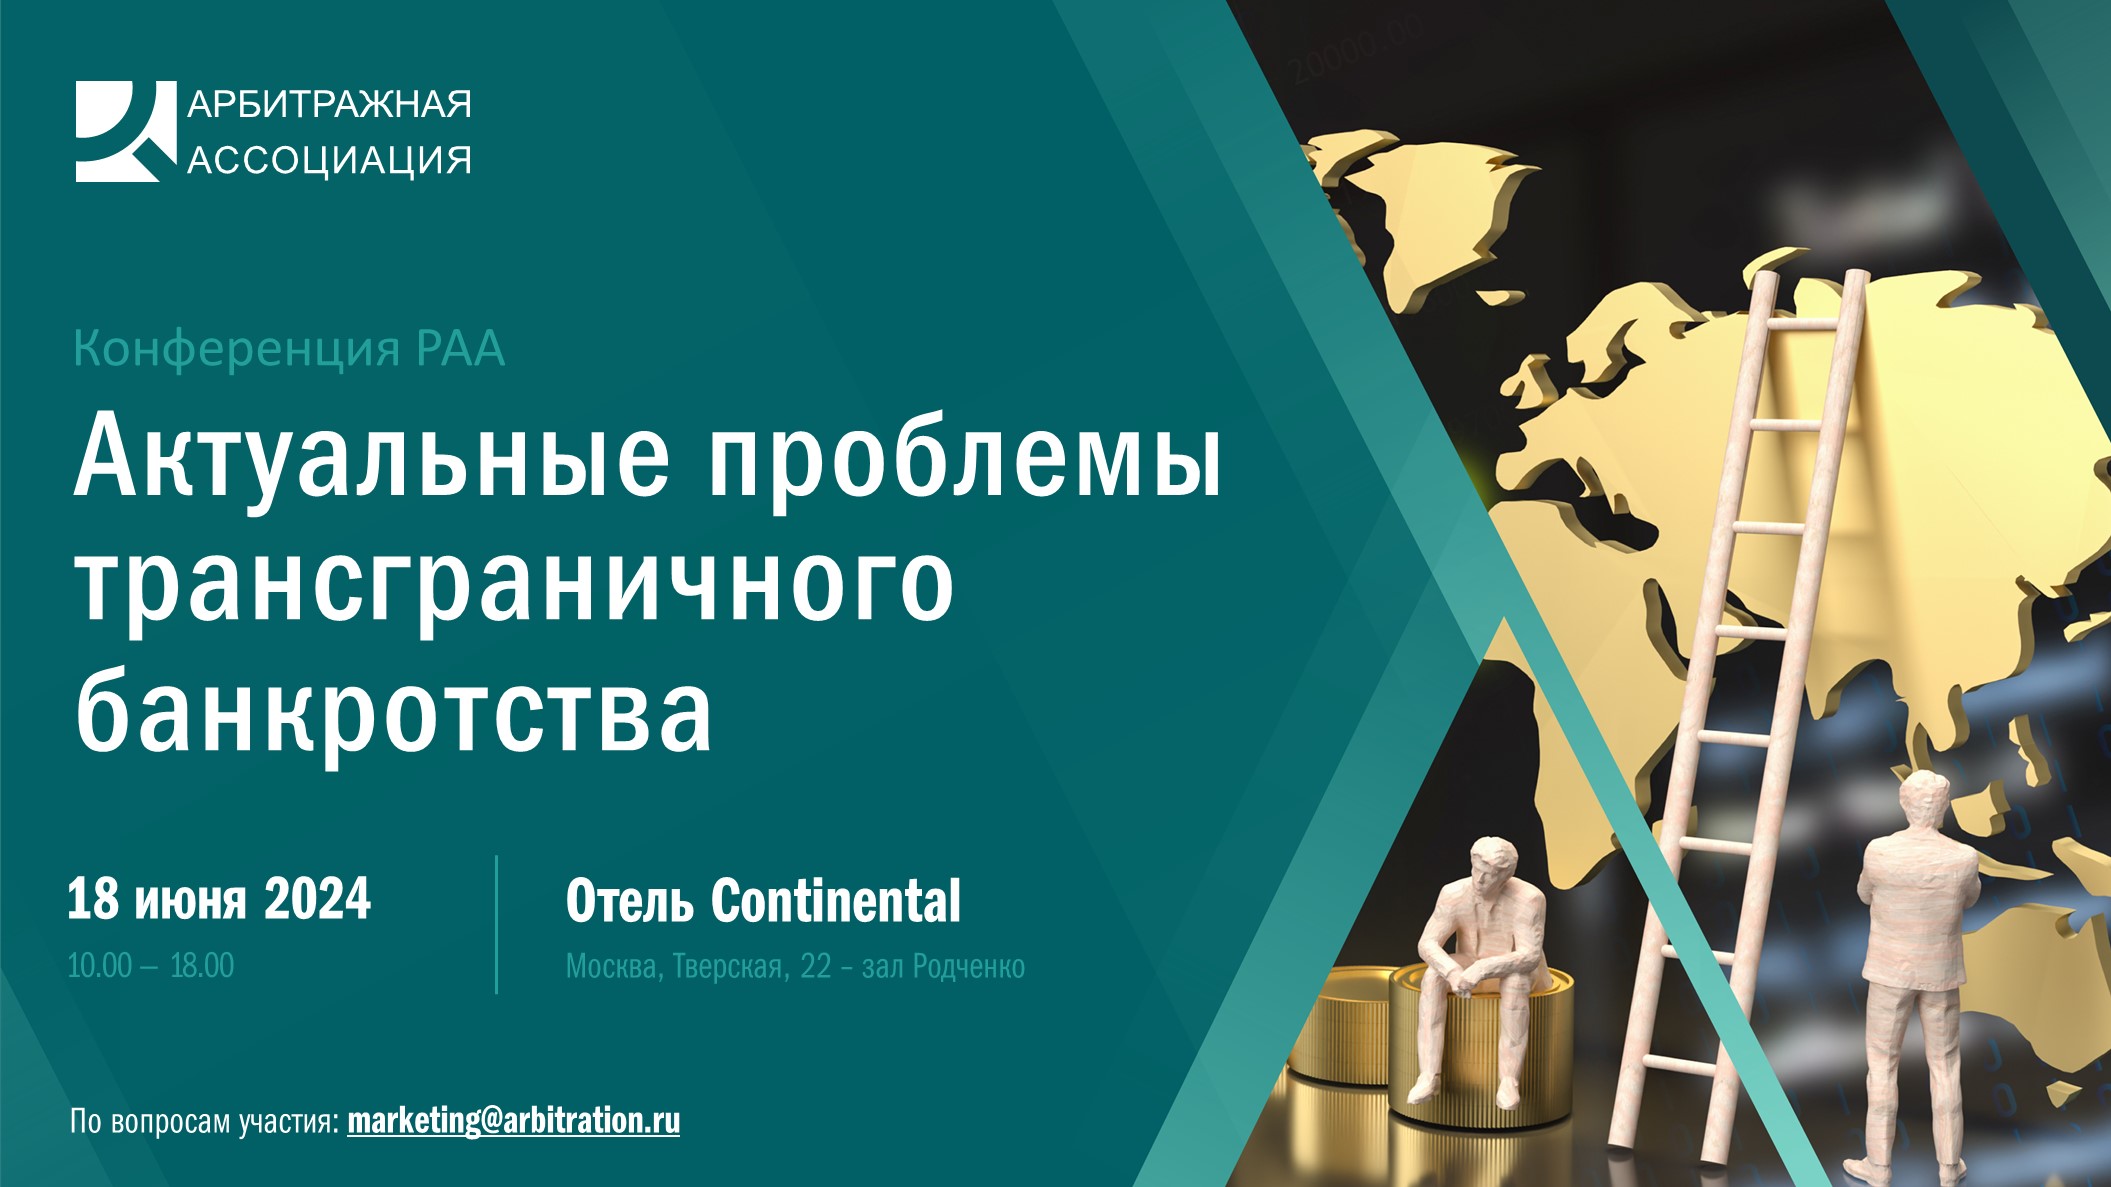 Конференция РАА Актуальные проблемы трансграничного банкротства,18 июня, Москва